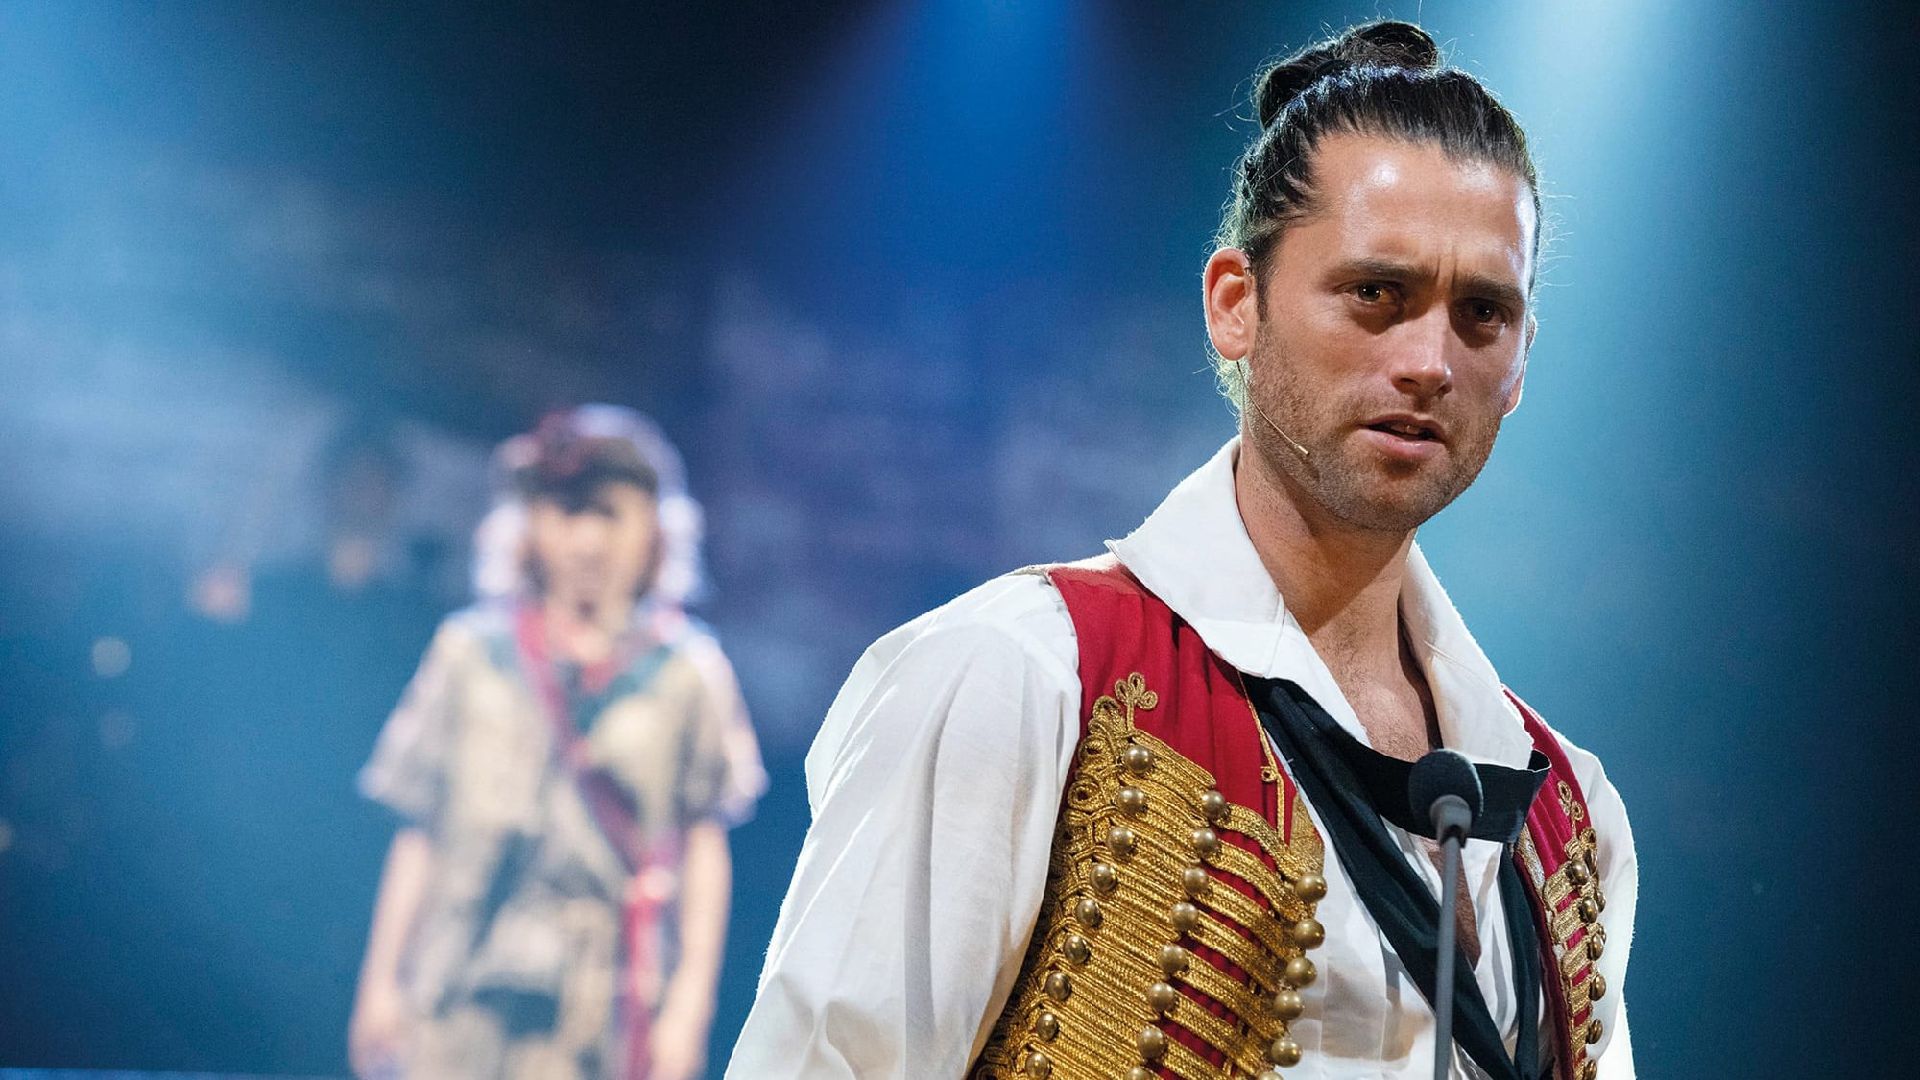 دانلود فیلم Les Misérables: The Staged Concert 2019